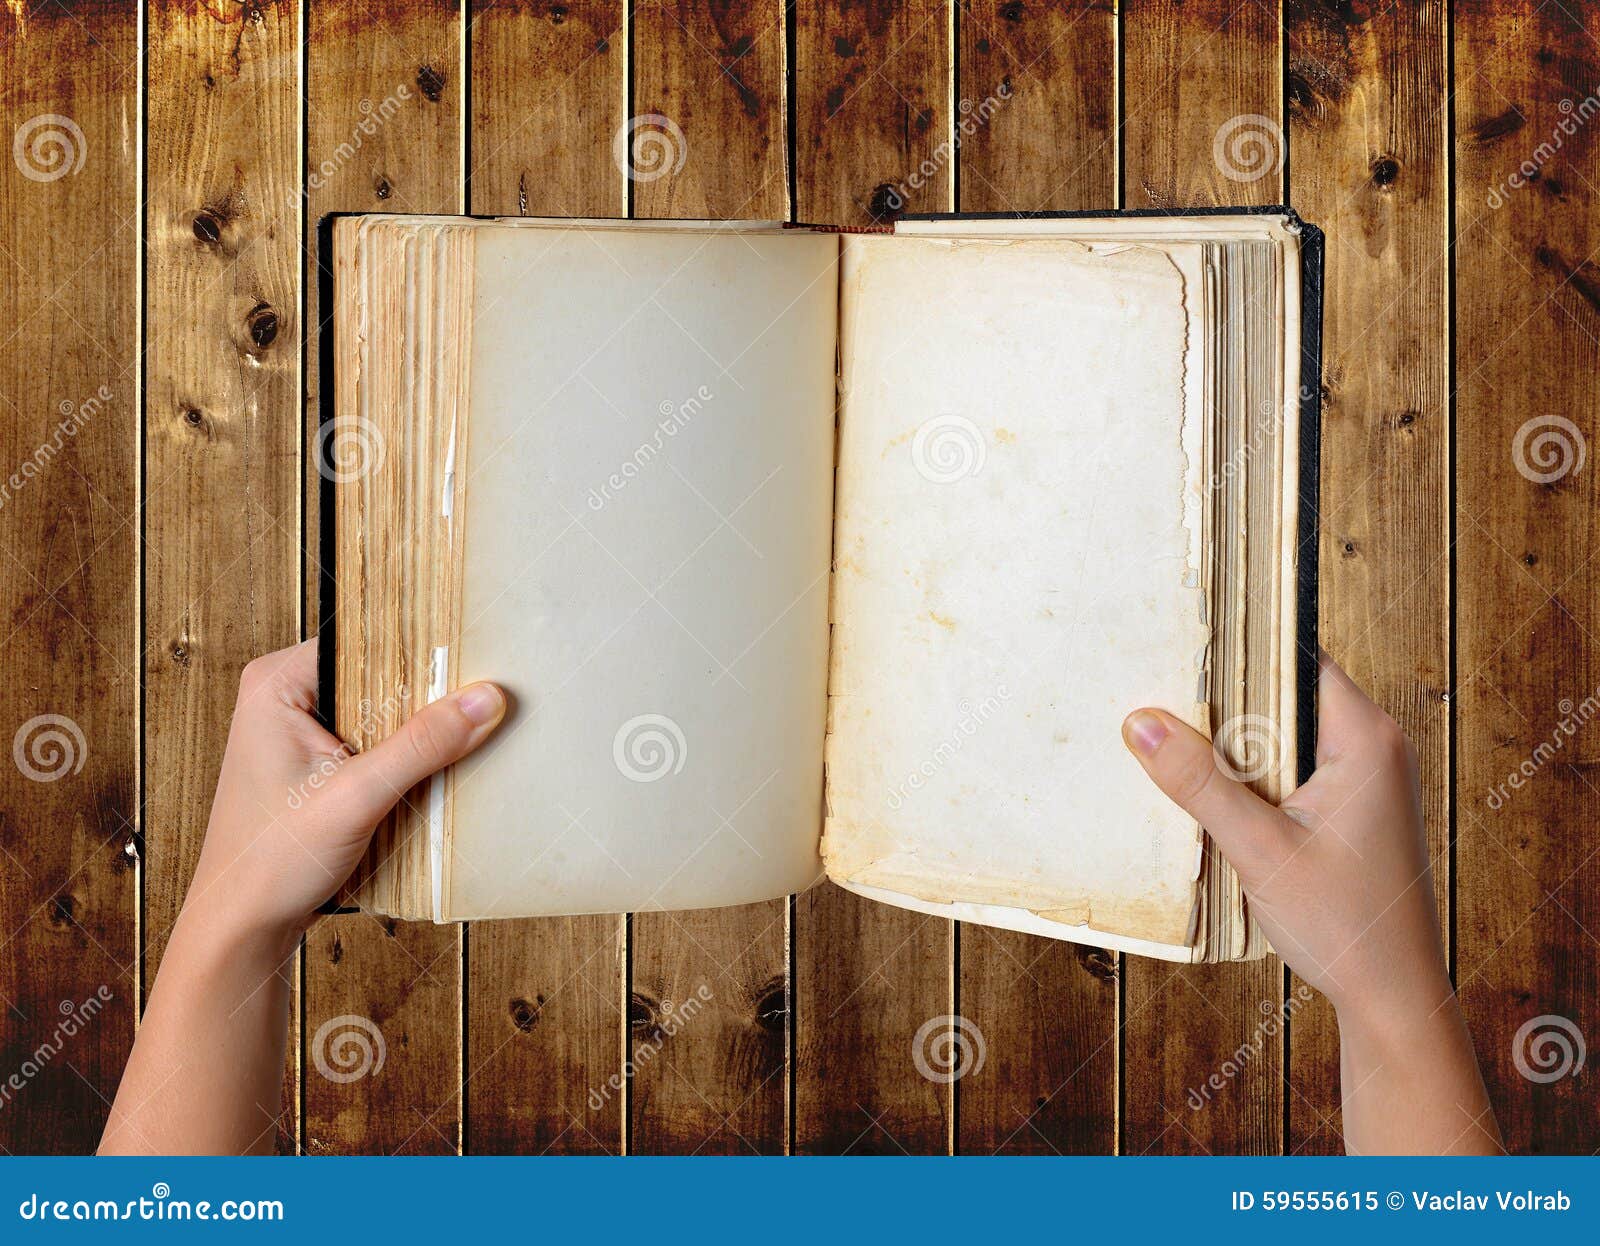 Раскрытая книга в руках. Книжка открытая в руках. Пустая книга. Рисунок открытой книги в руках.